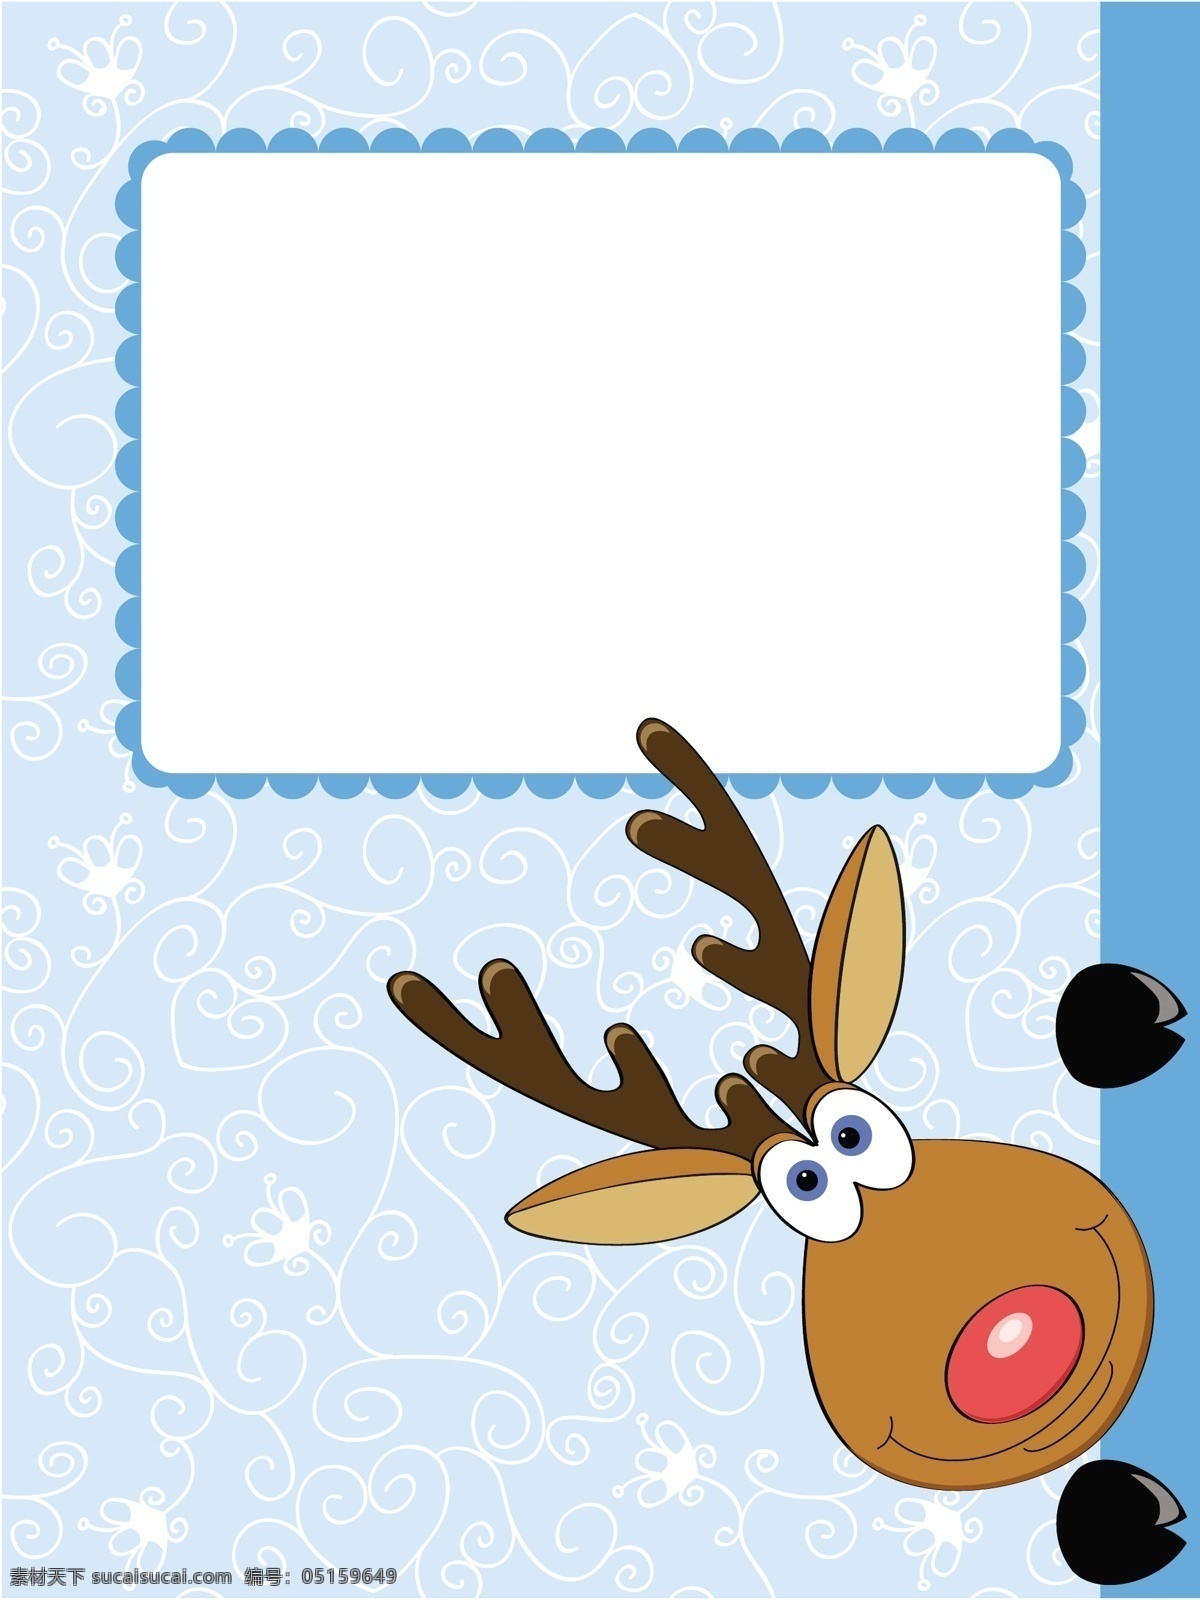 卡通 圣诞 鹿 矢量 冬天 可爱的 麋鹿 圣诞节 插画矢量素材 矢量图 矢量人物